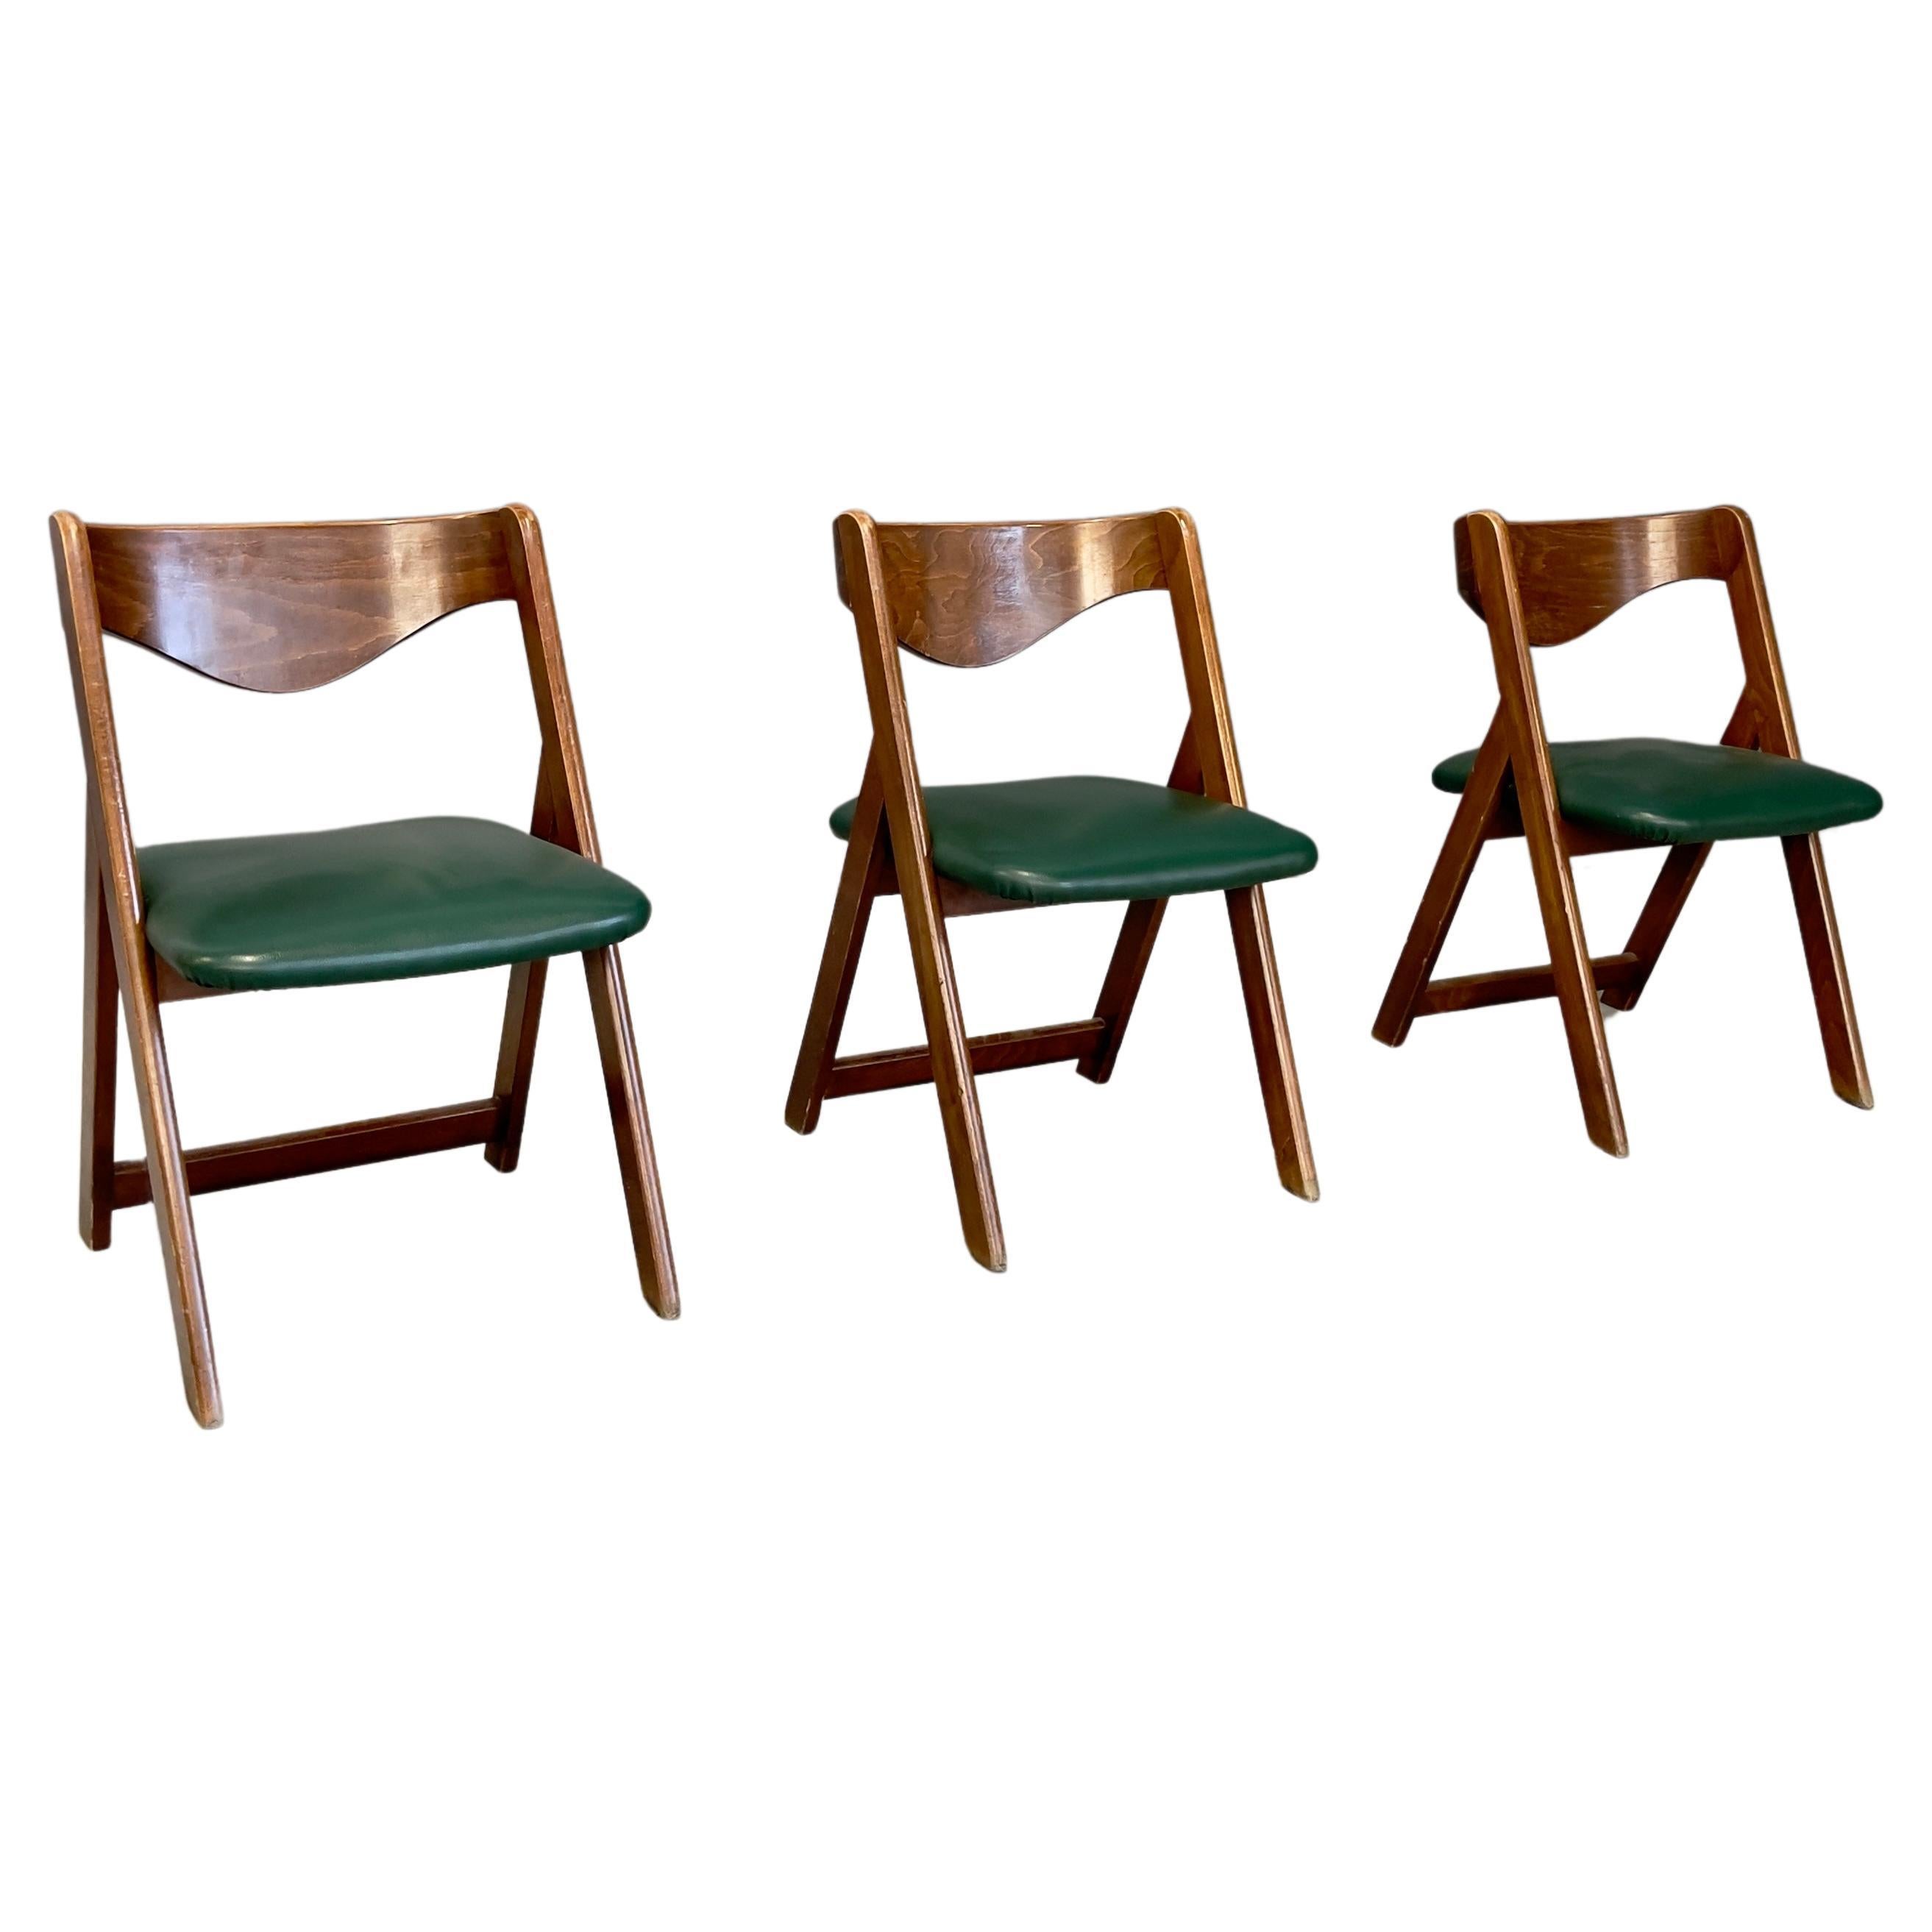 Three Chairs, 1960s